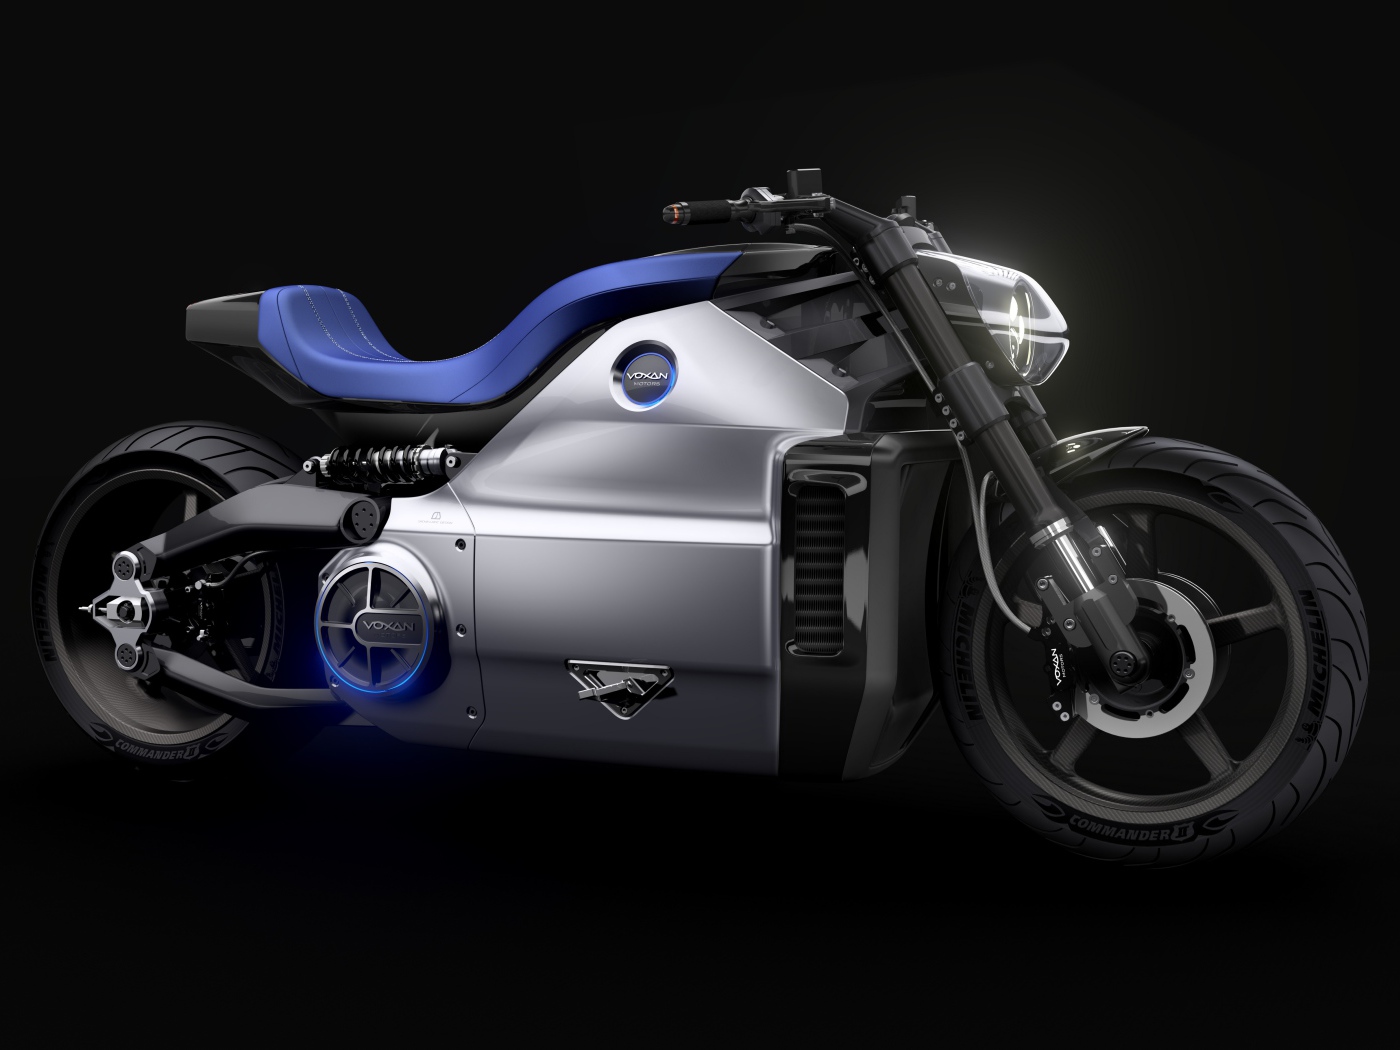 Мотоцикл Voxan Wattman,  концепт